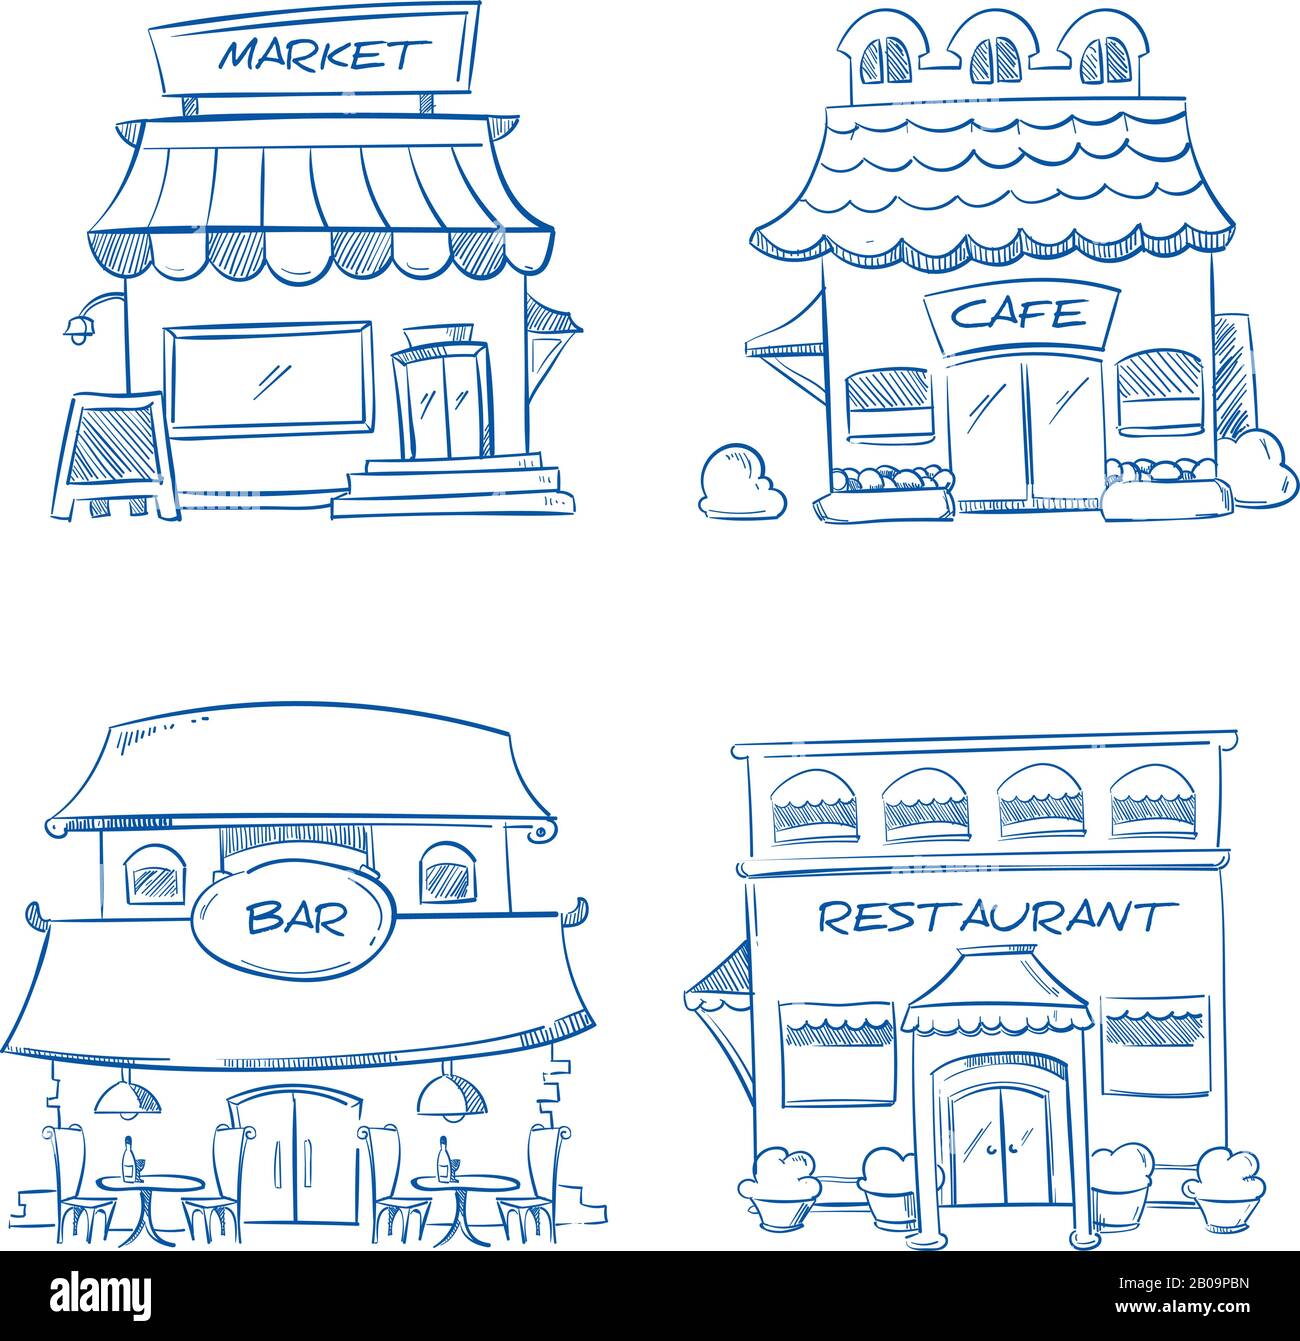 Negozio disegnato a mano, negozio, ristorante, caffetteria, bar edifici. Collezione di doodle vettoriali di edifici di schizzo. Illustrazione dell'edificio del mercato Illustrazione Vettoriale